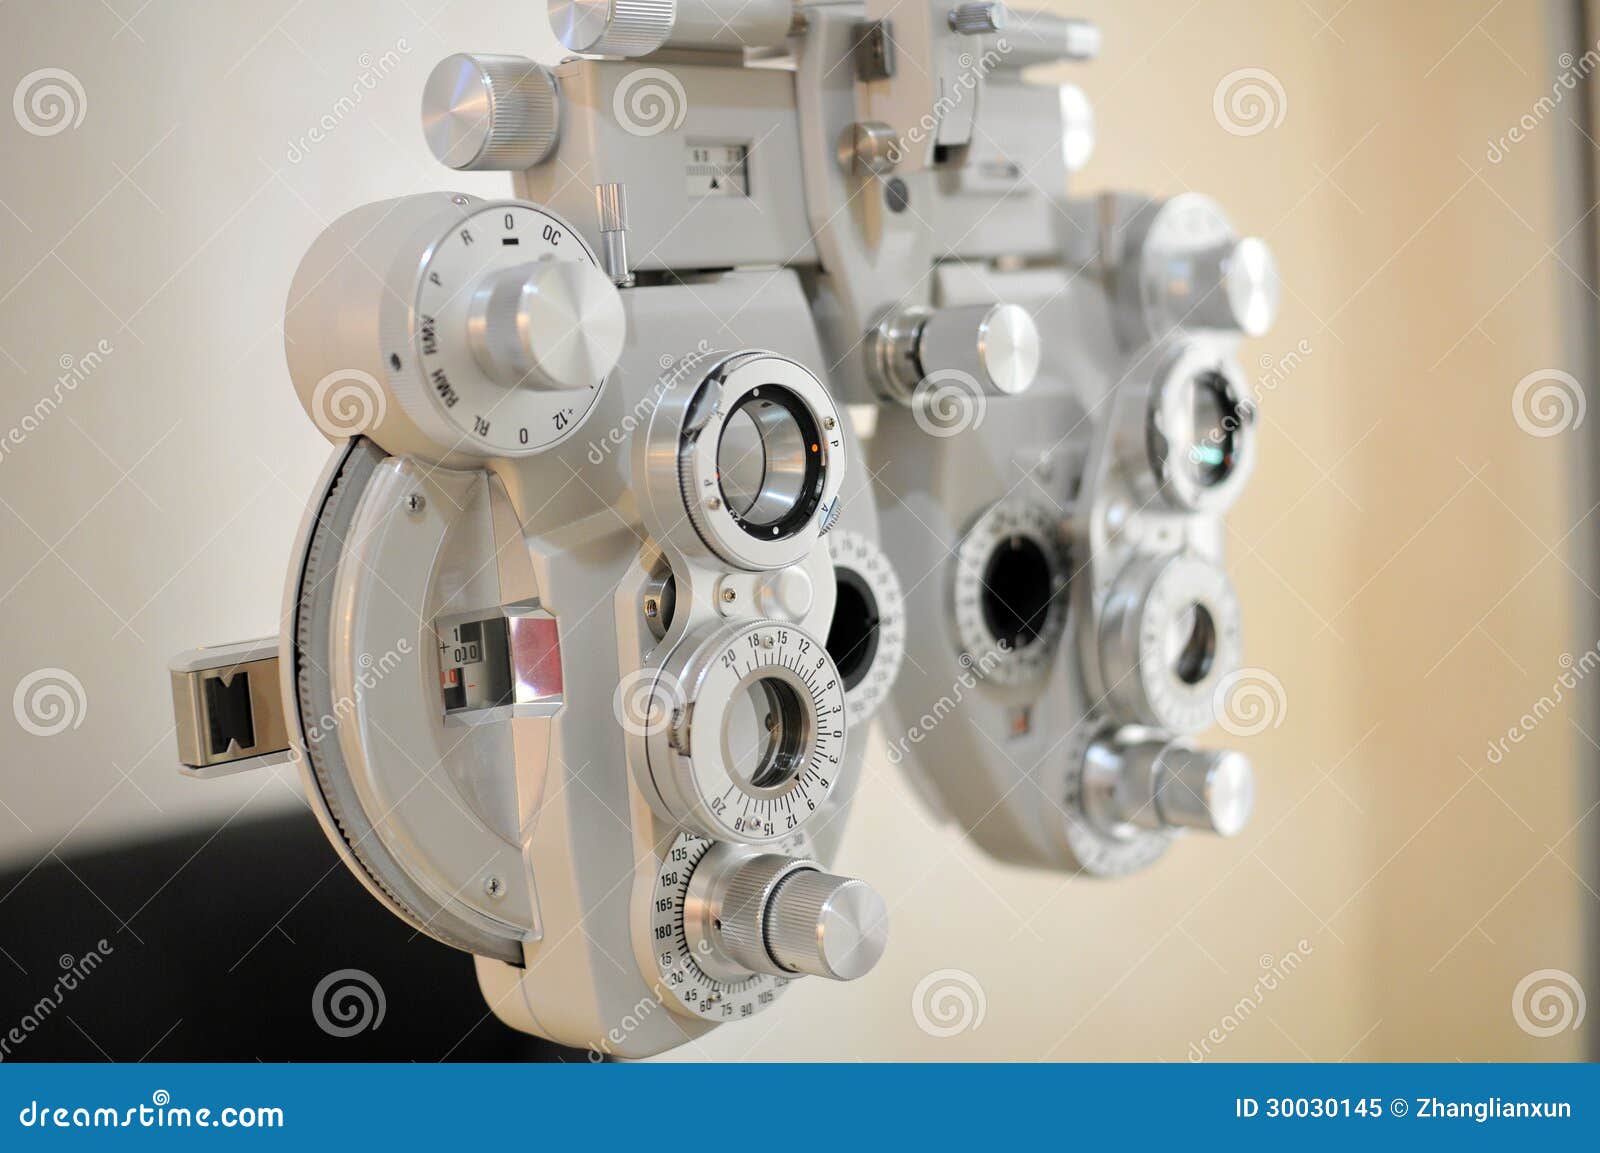 material optometry